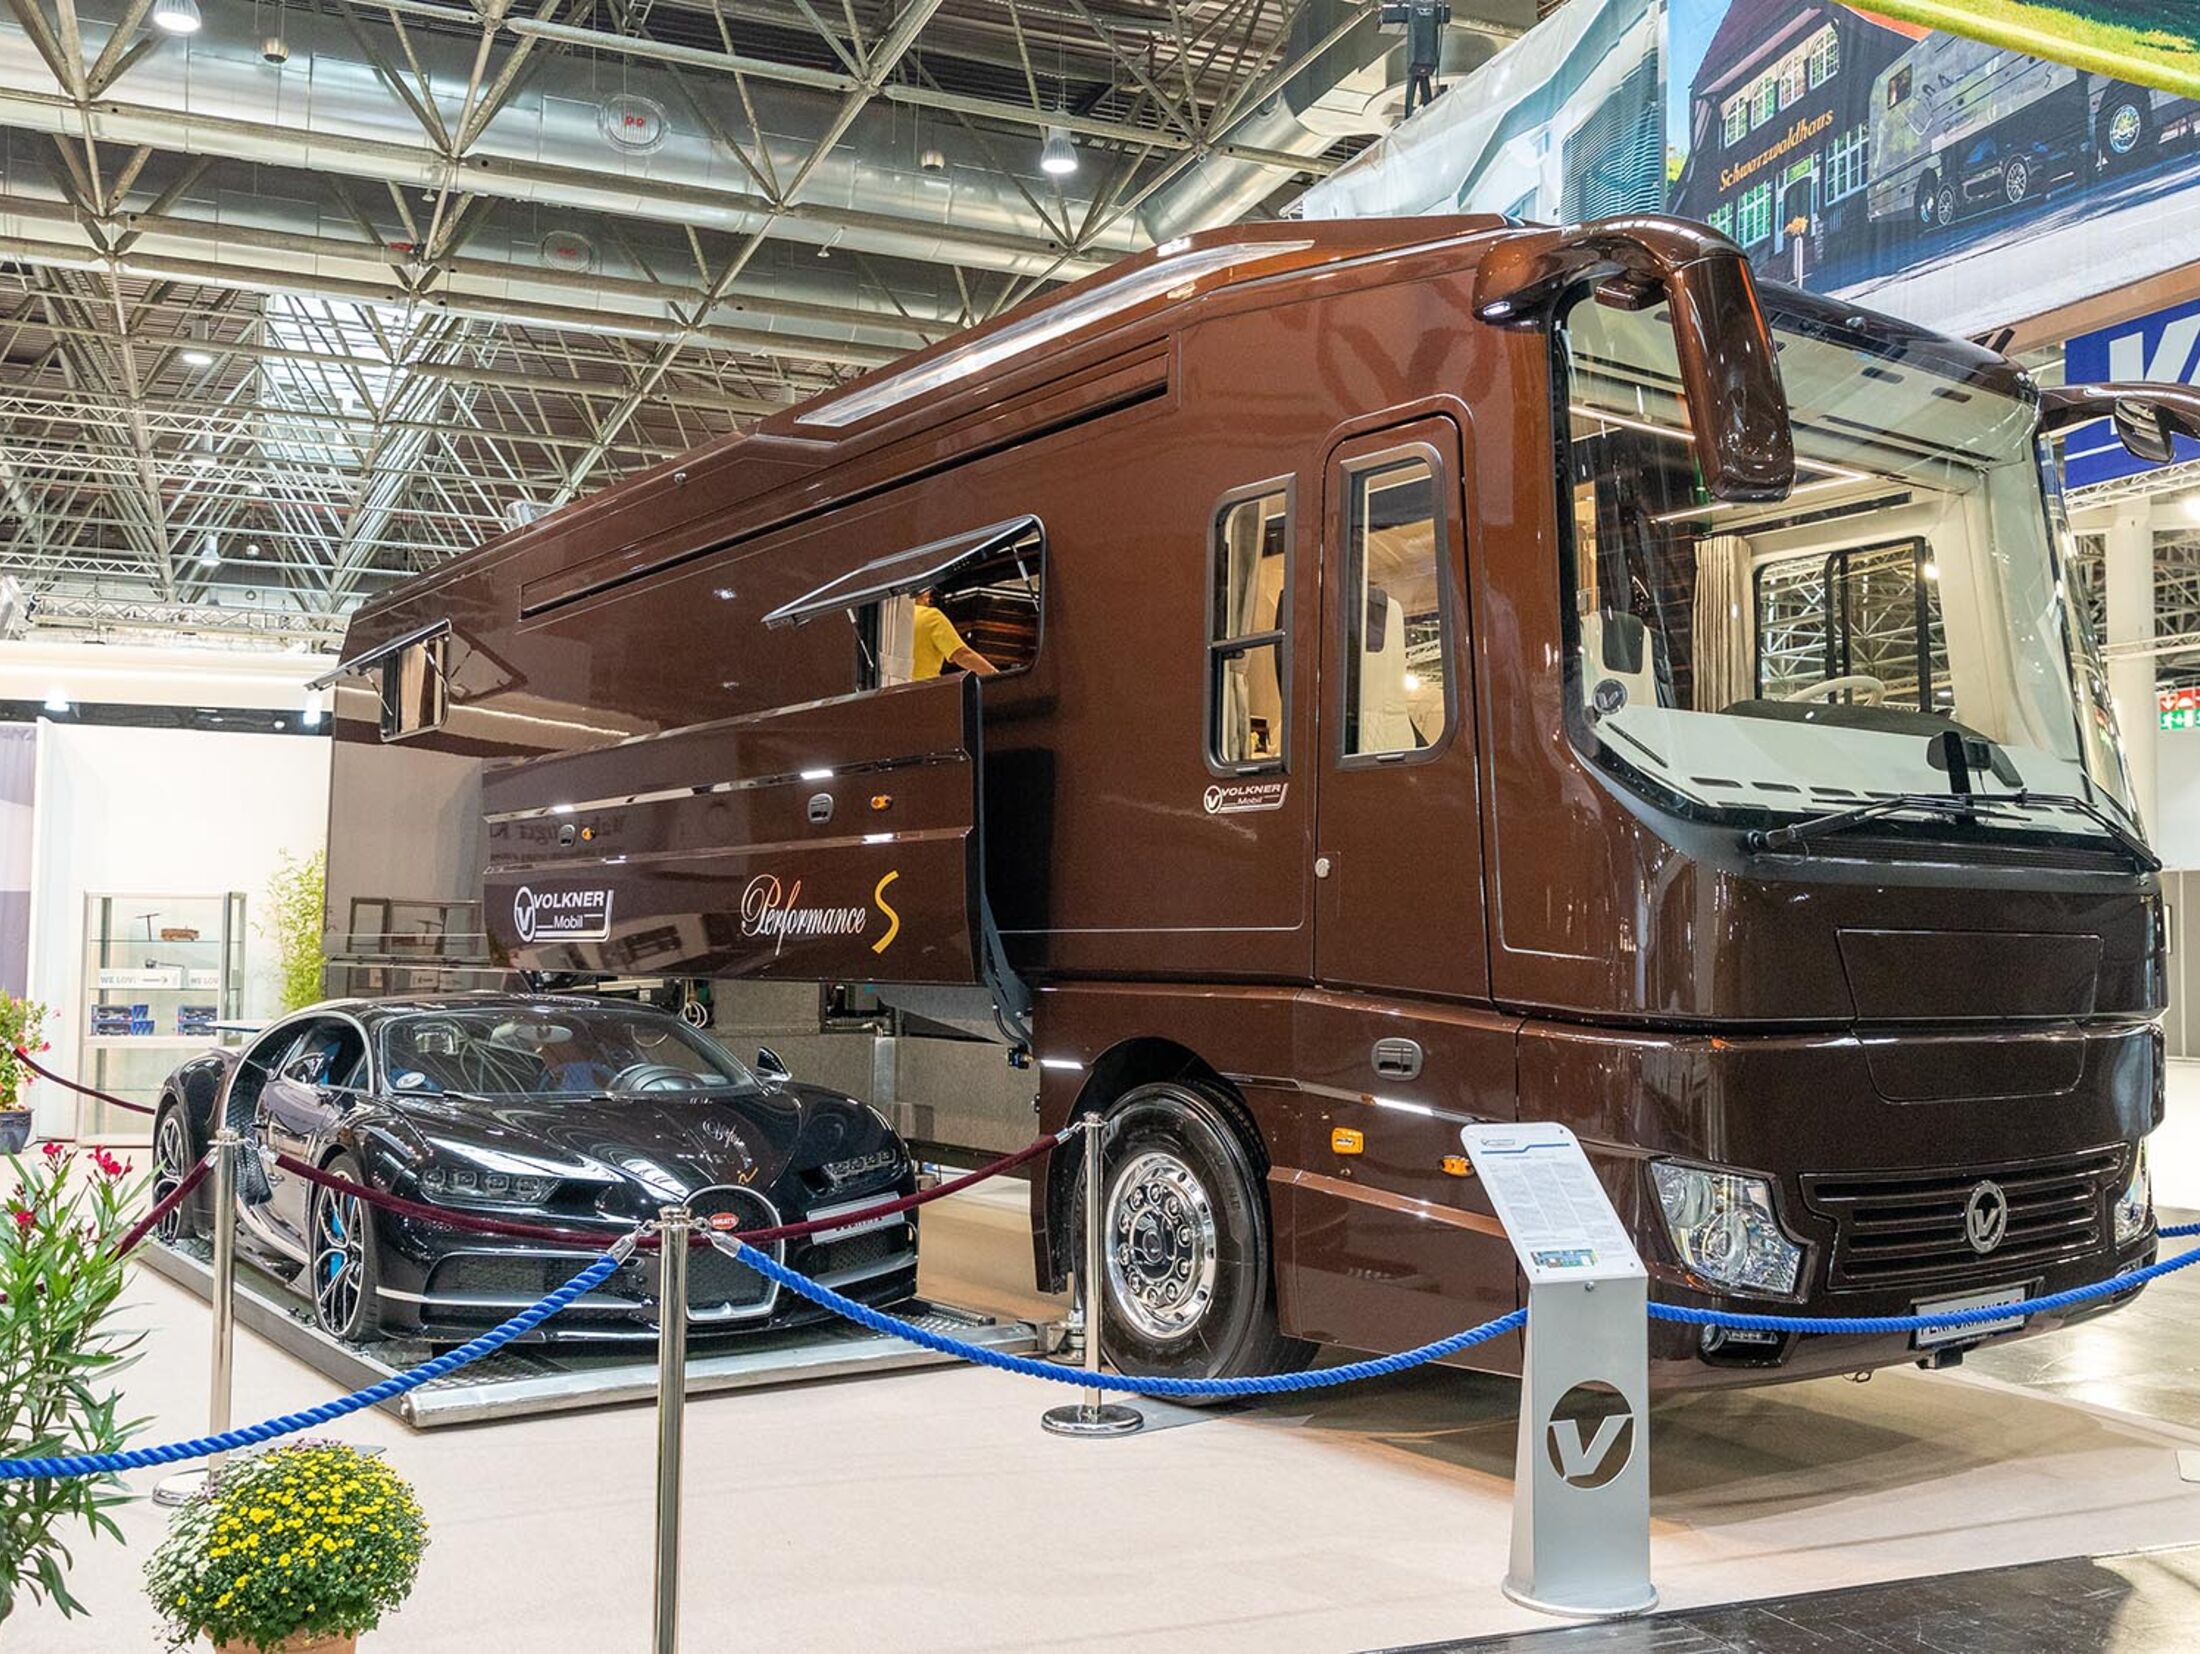 Caravans 2019: Neue Wohnwagen-Modelle - AUTO BILD